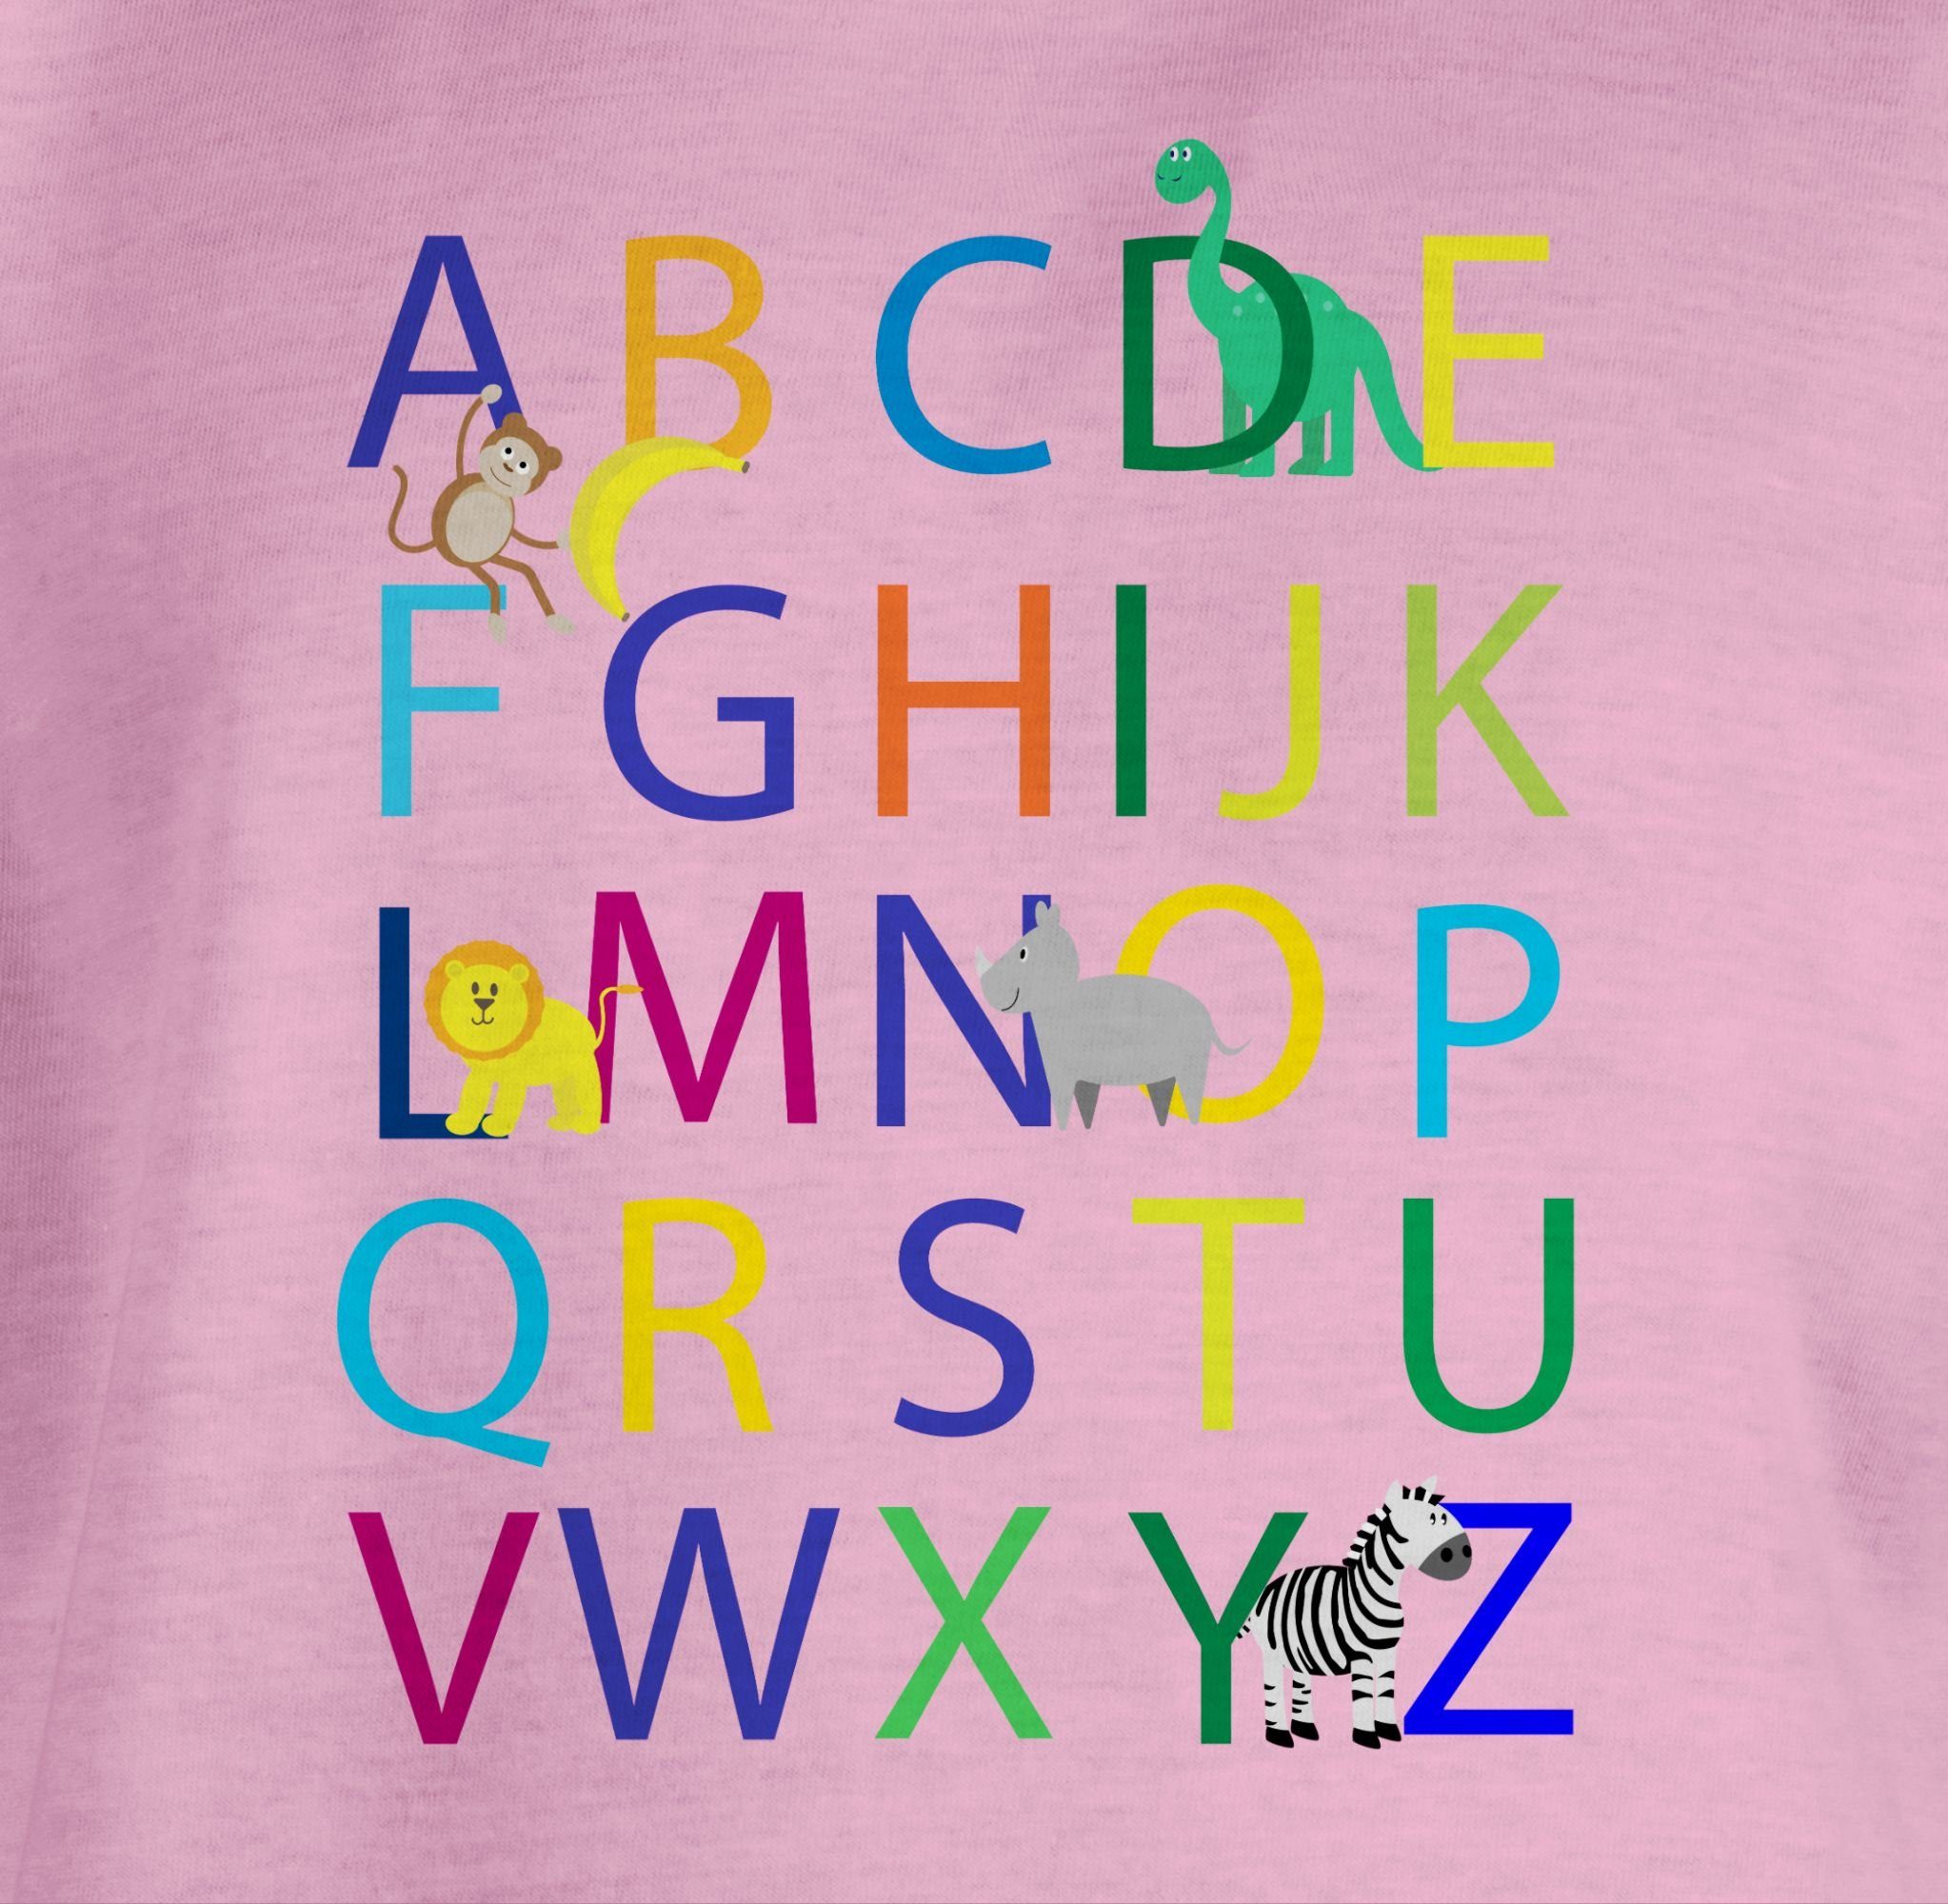 Mädchen ABC Einschulung Einschulung Rosa 2 Shirtracer T-Shirt